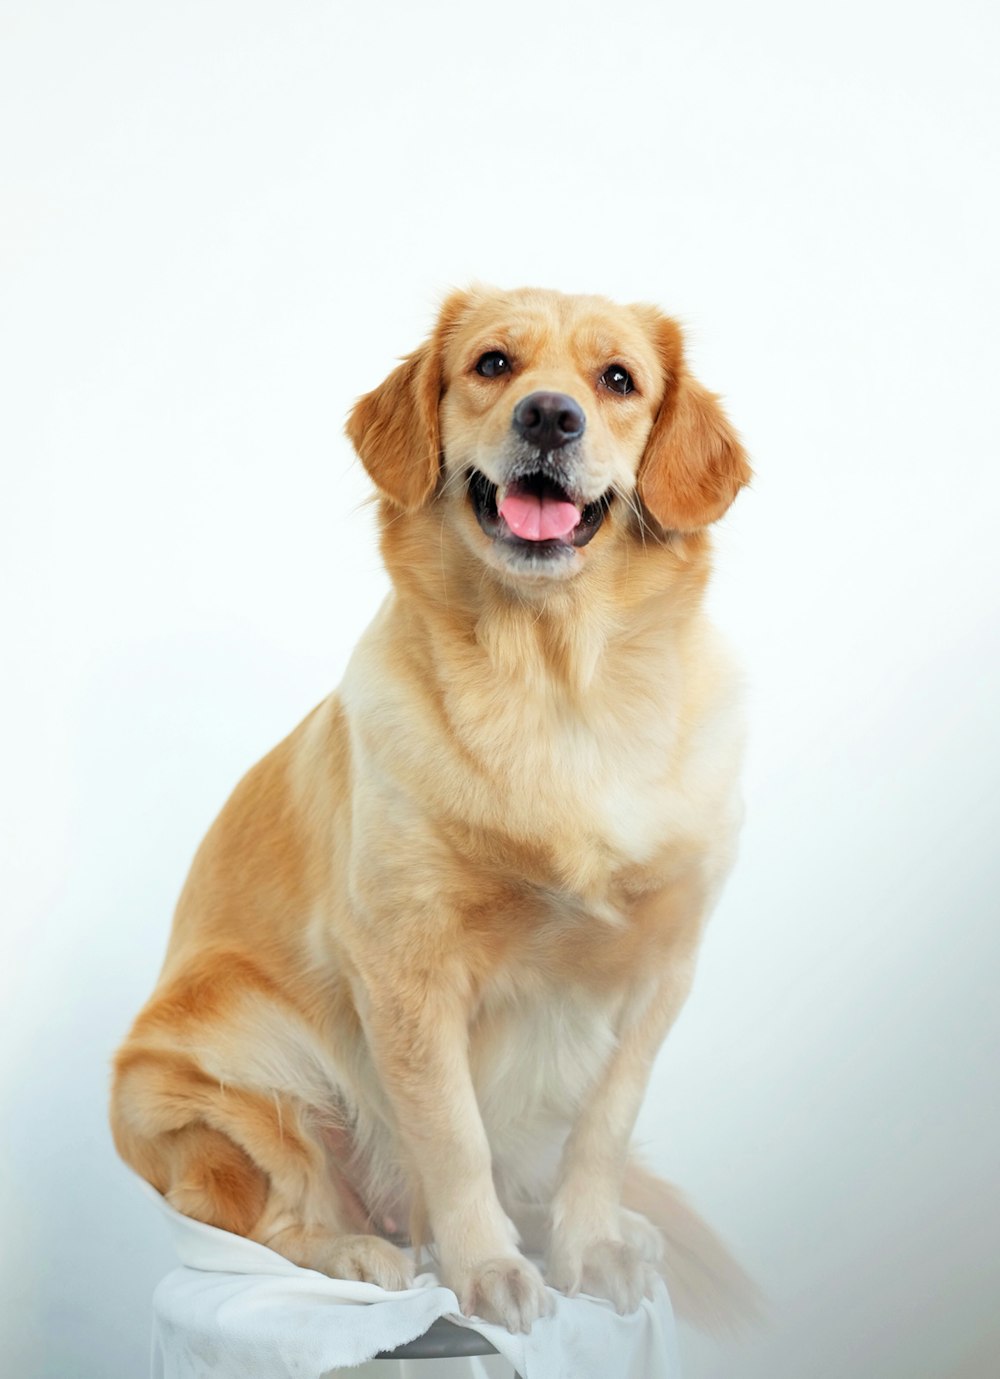 golden retriever puppy on white background